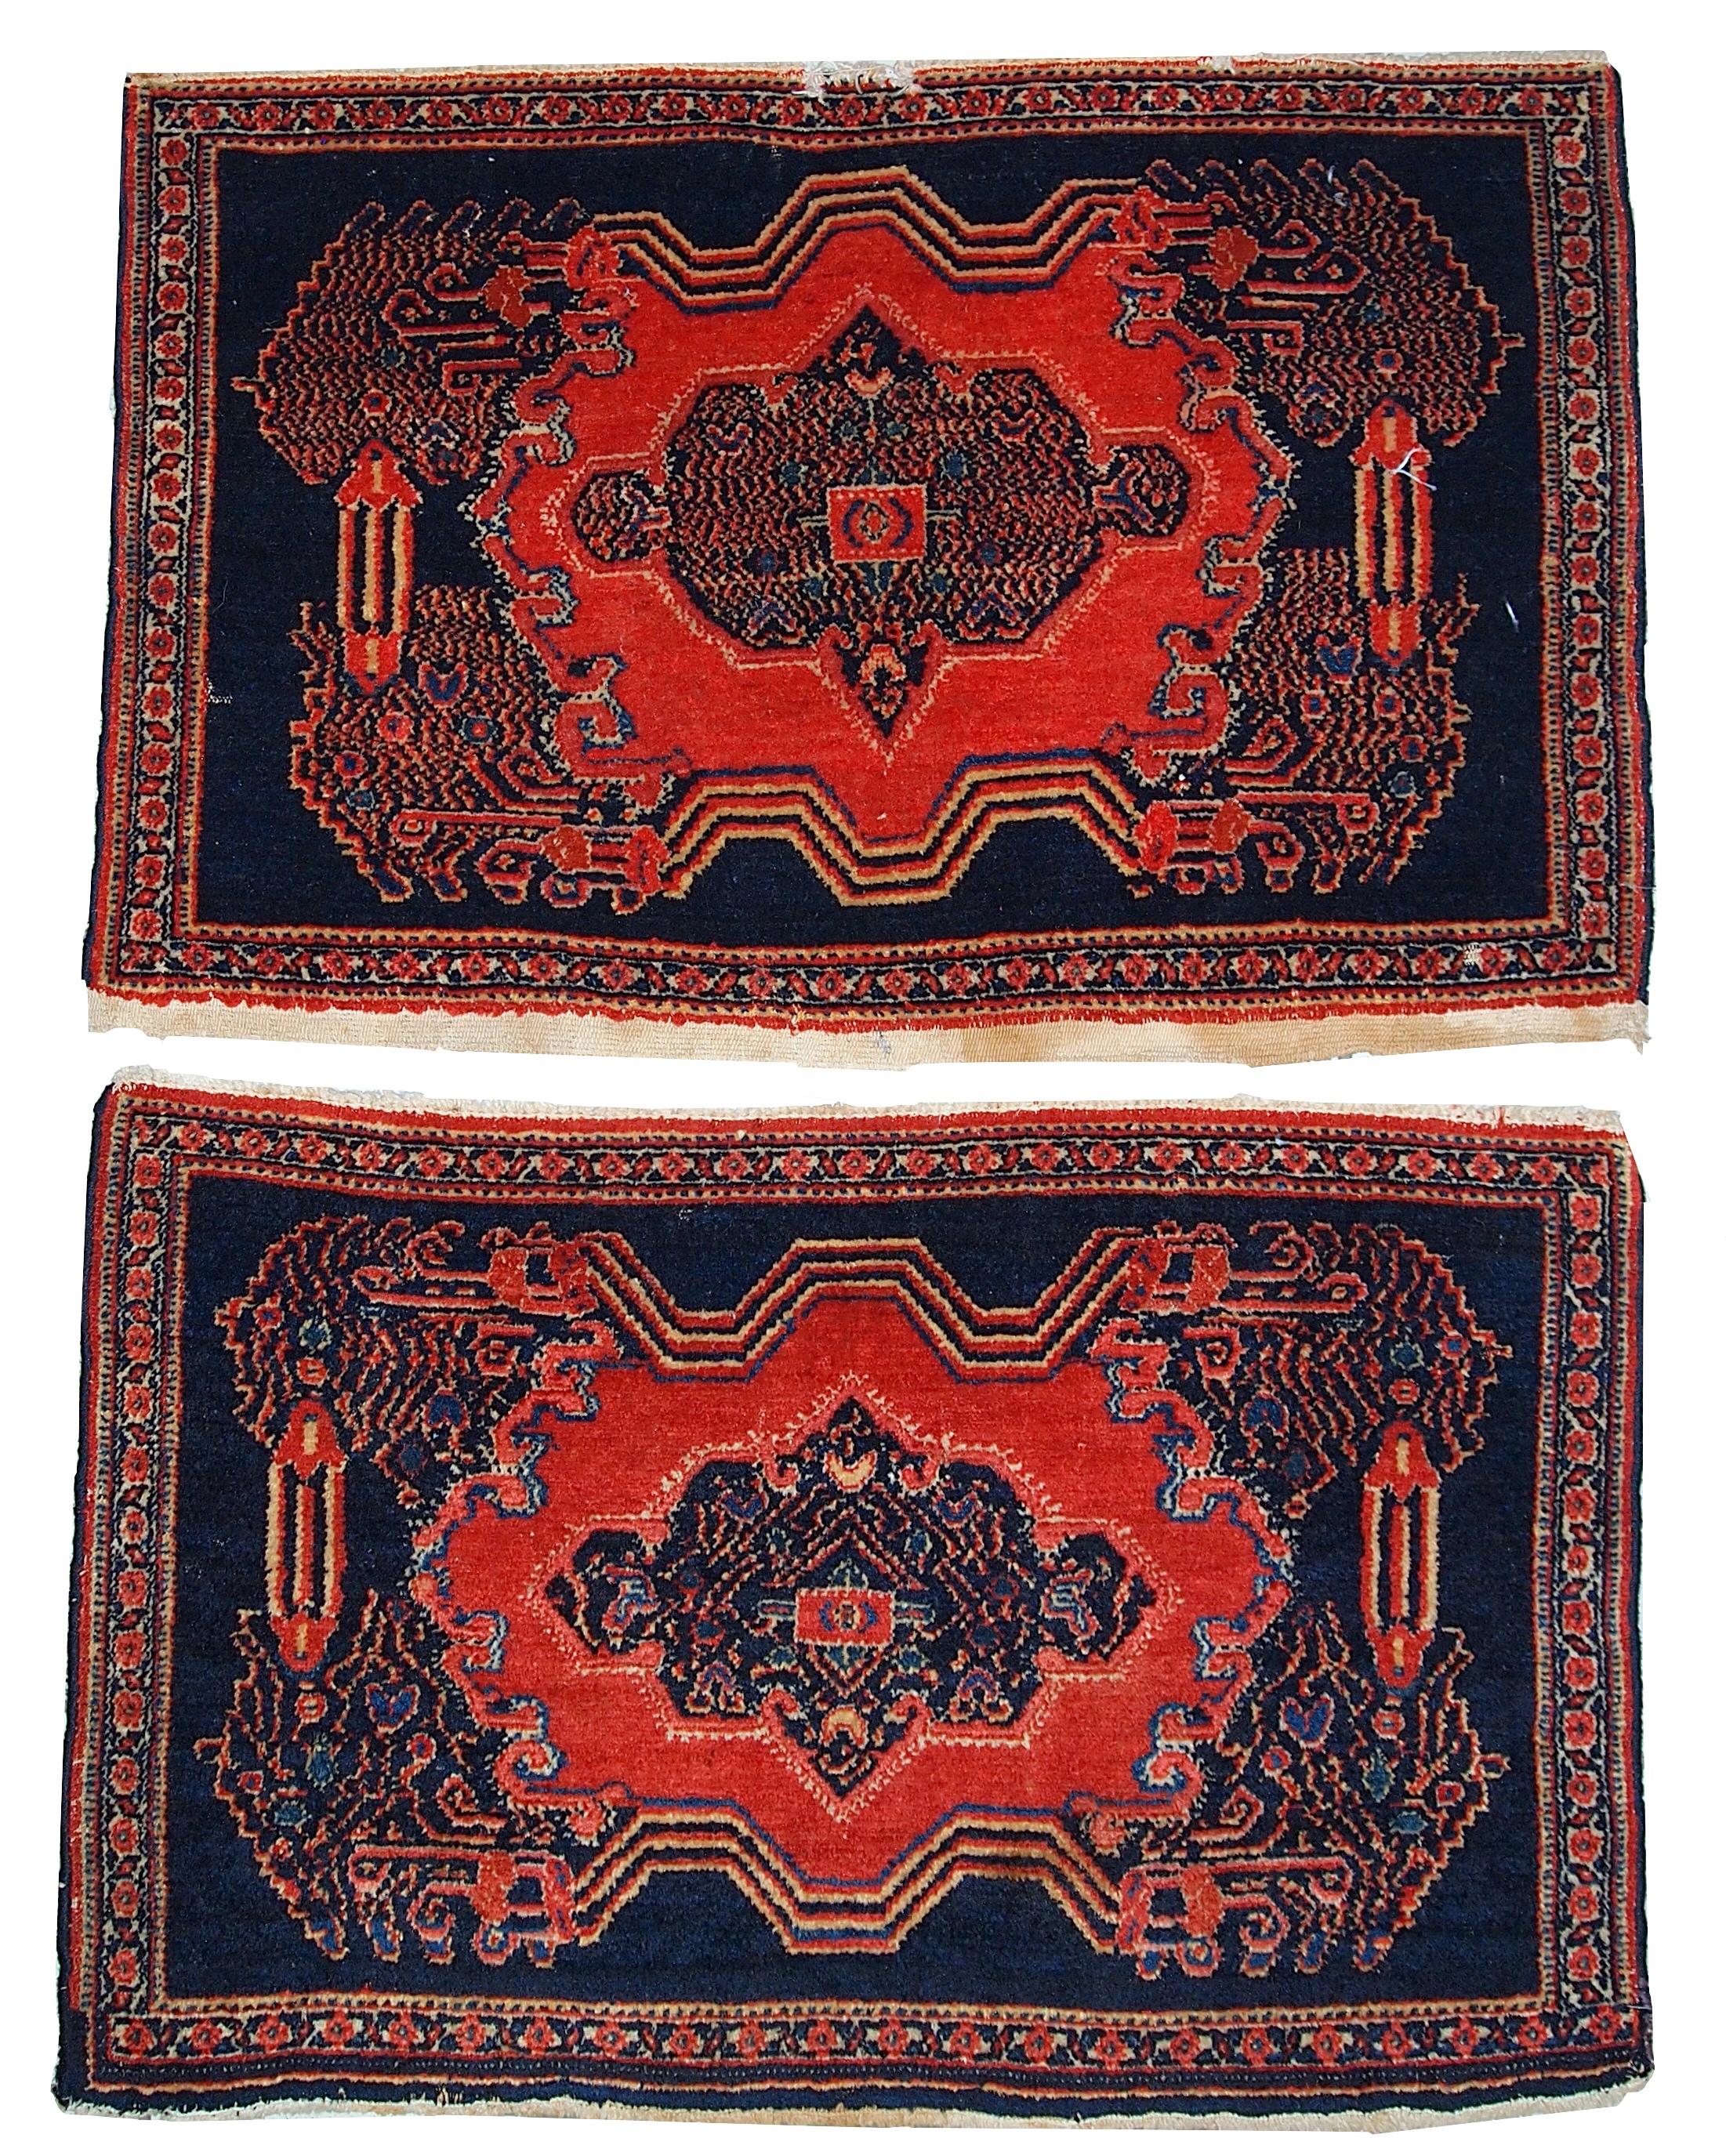 Antike Senneh-Teppiche in gutem Originalzustand. Sehr feine Teppiche mit detailliertem Design. Maße: 1.7' x 2.6' (52cm x 80cm).